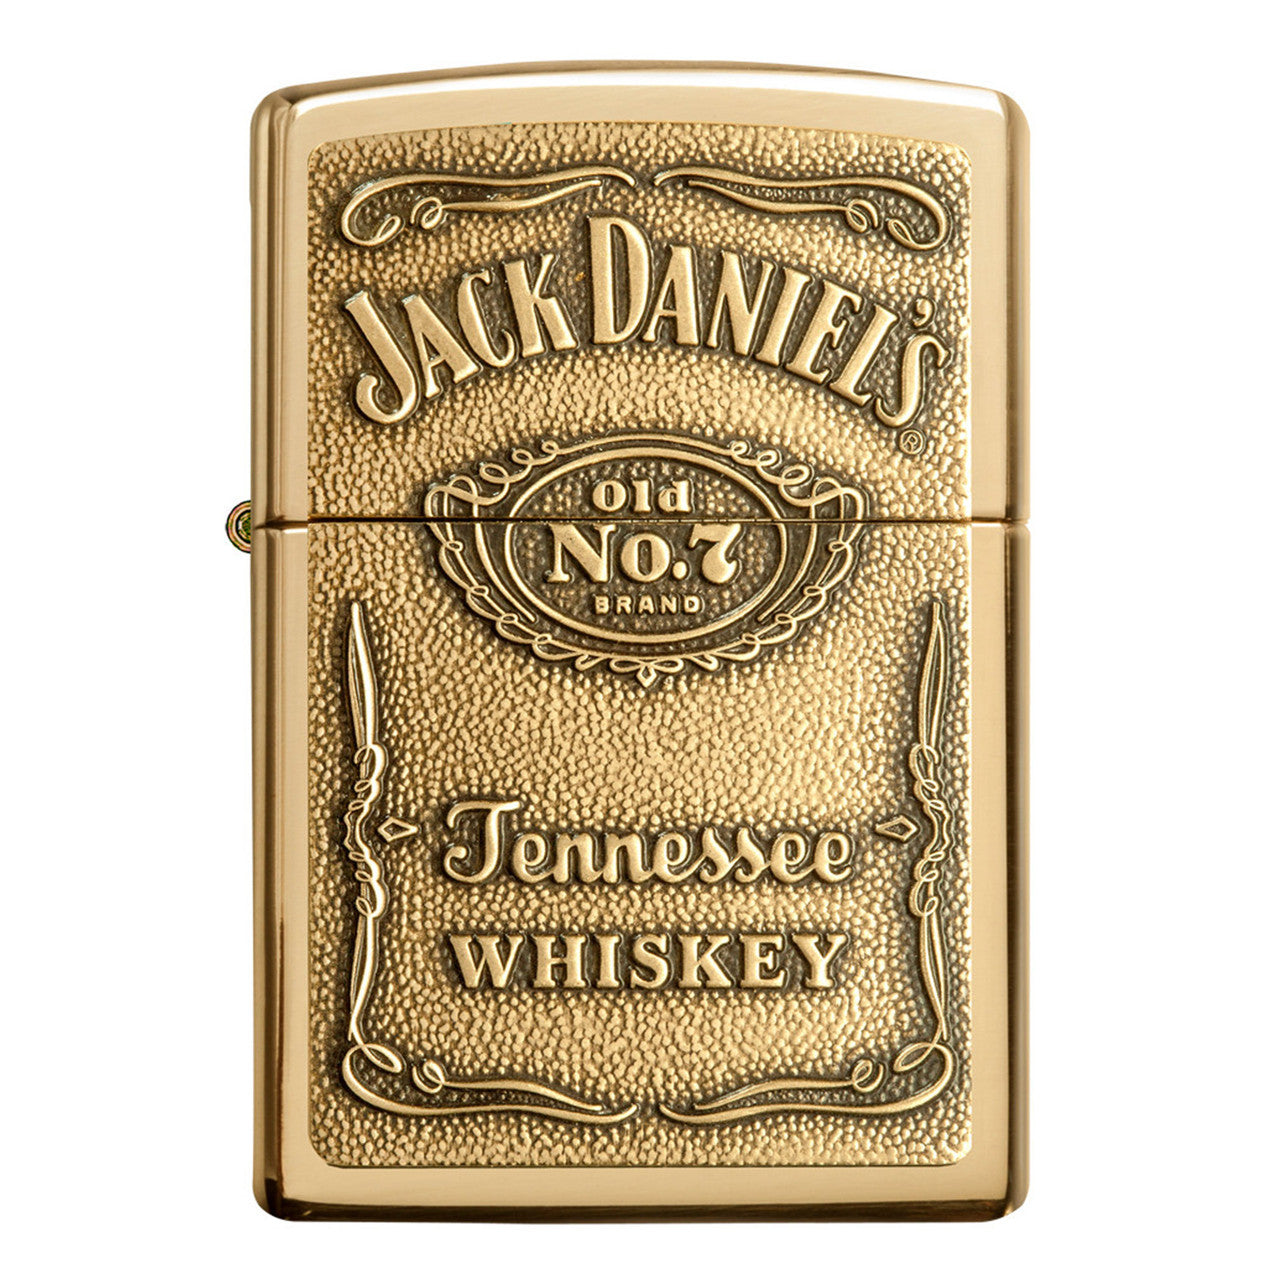 Jack Daniels Label Emblem - HP Brass 254BJD.428